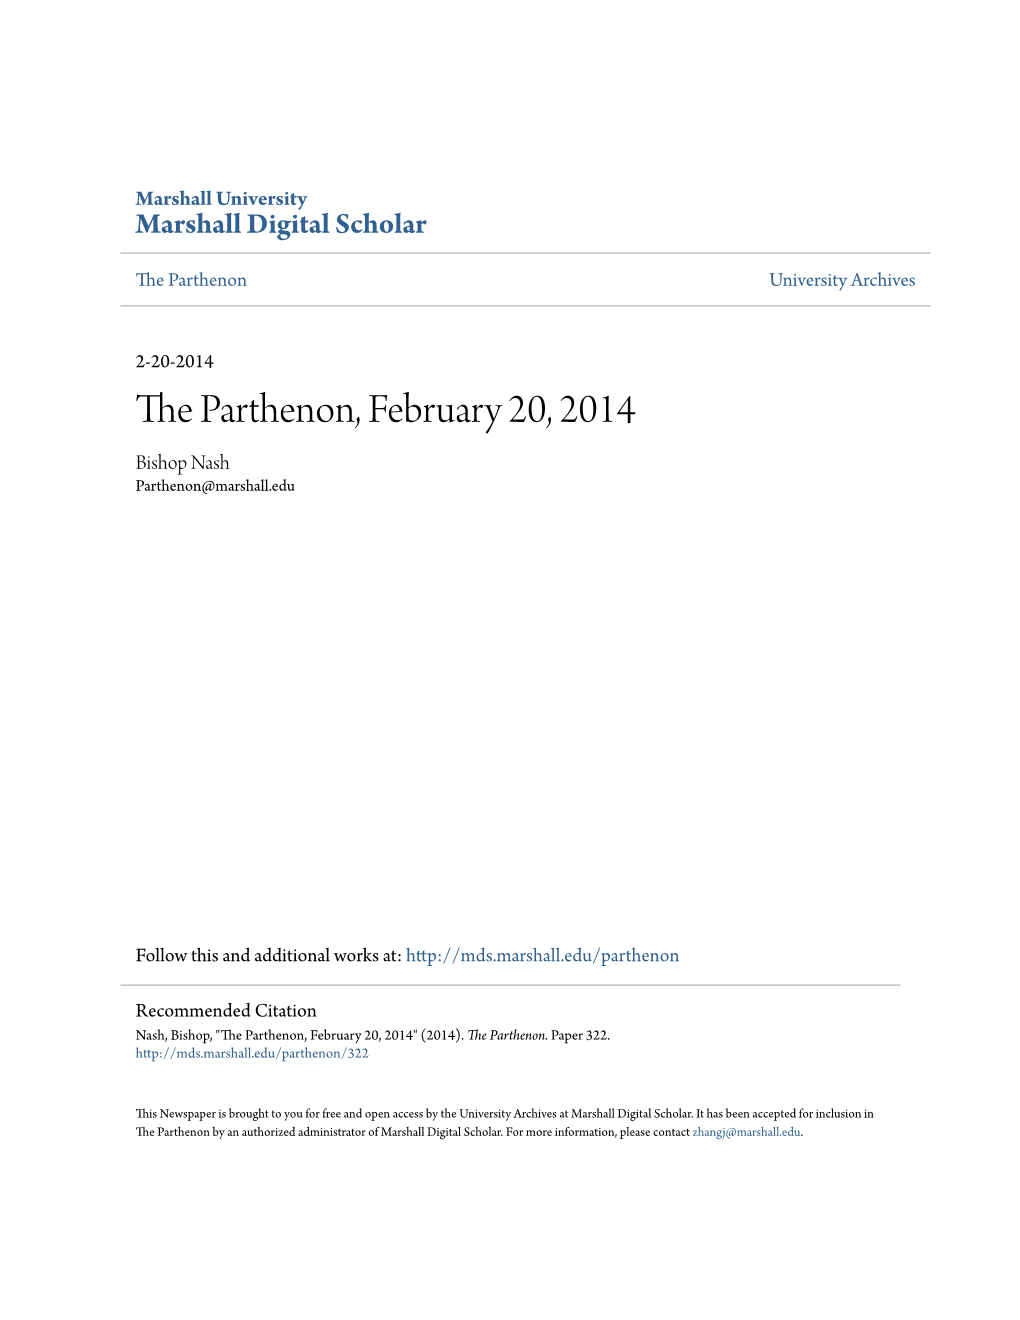 The Parthenon, February 20, 2014